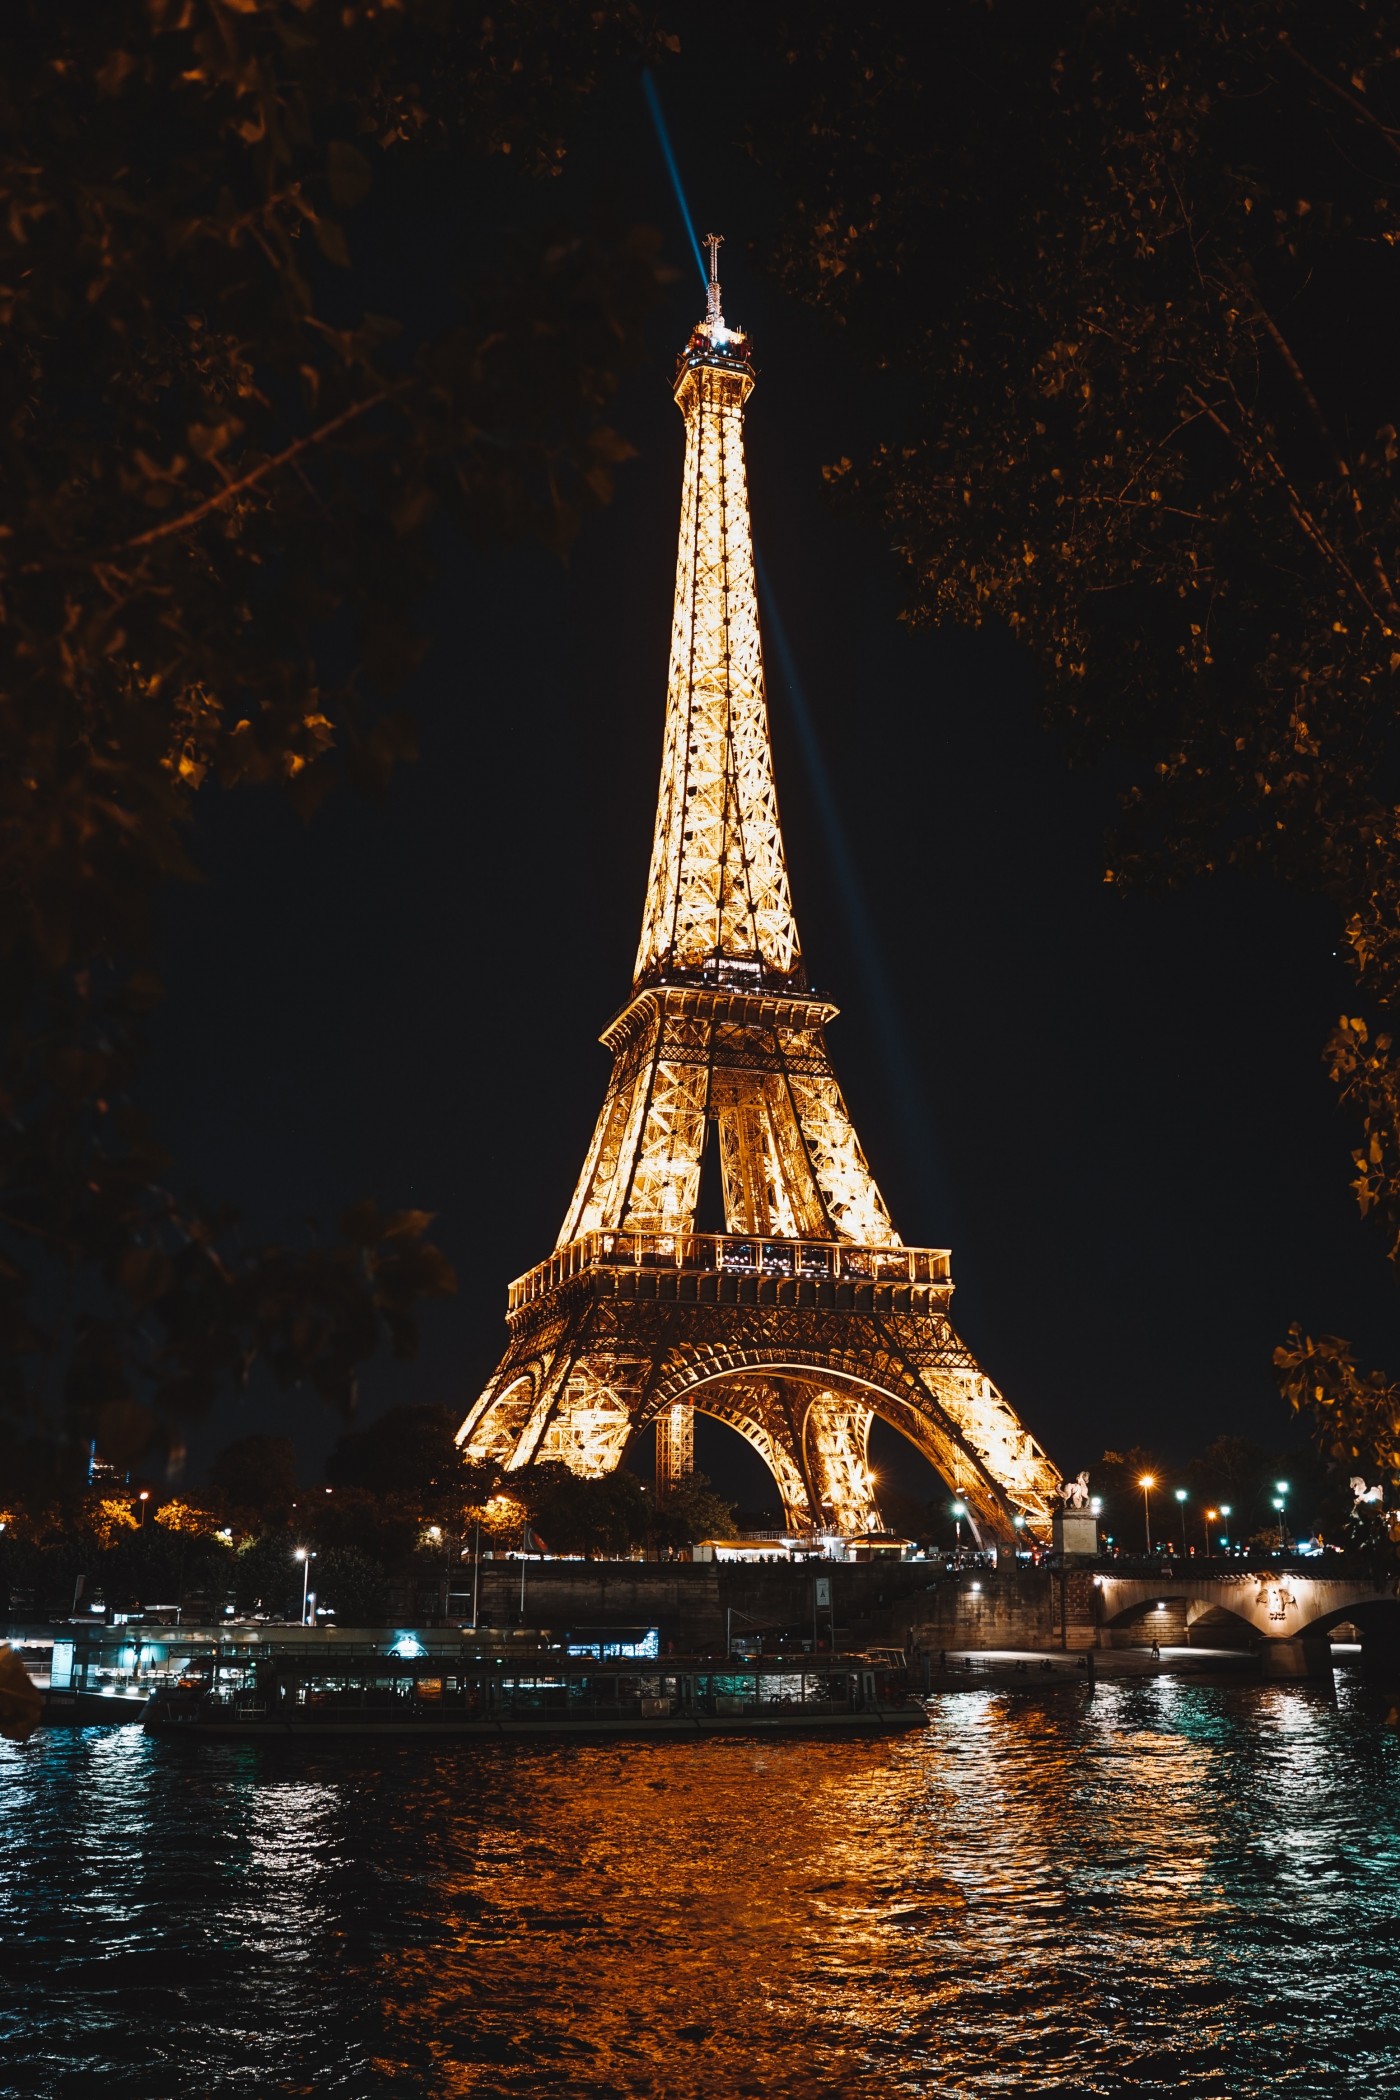 好看的巴黎埃菲尔铁塔日出壁纸图片下载